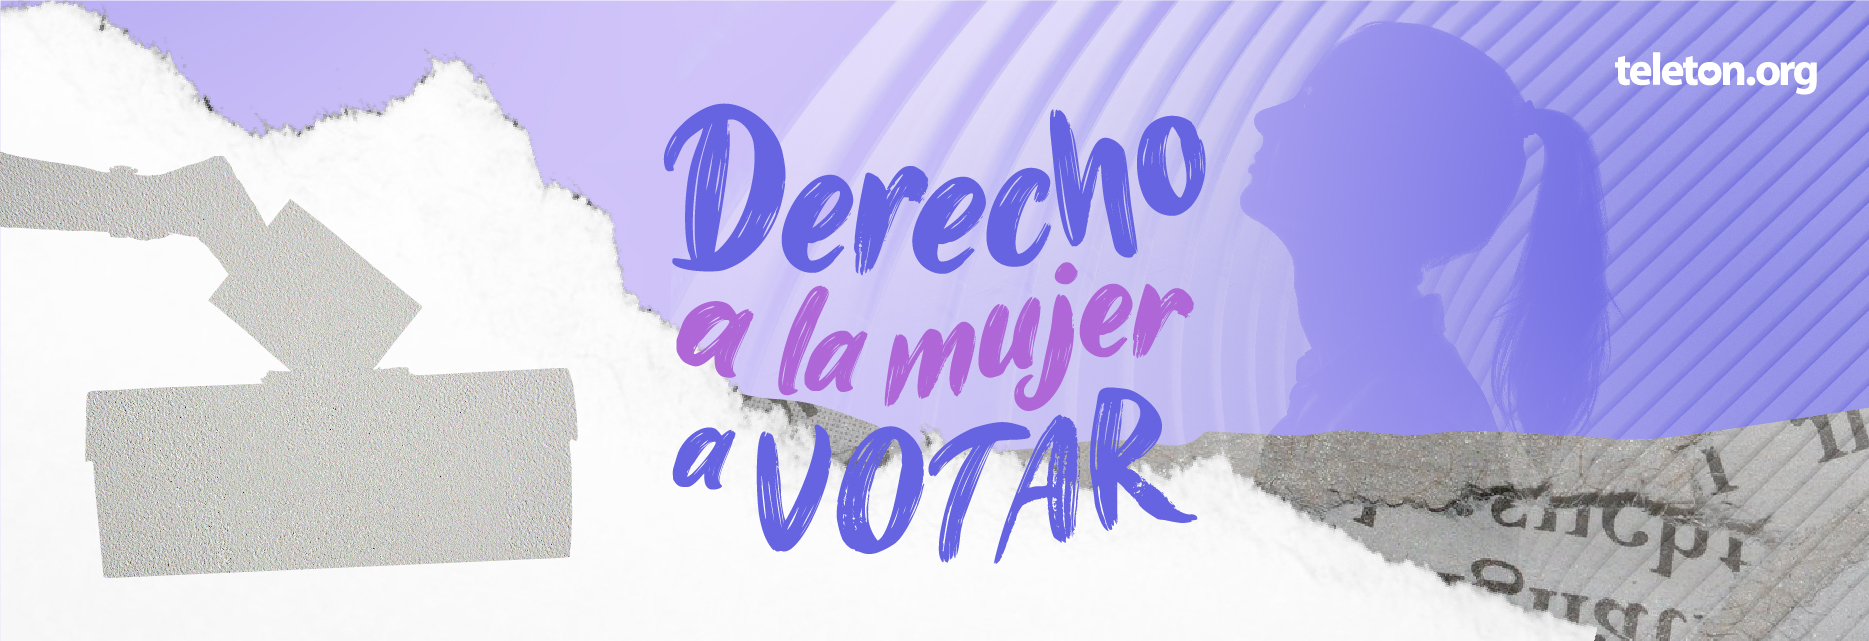 Diseño de fondo blanco con texto morado: Derecho de la mujer al voto